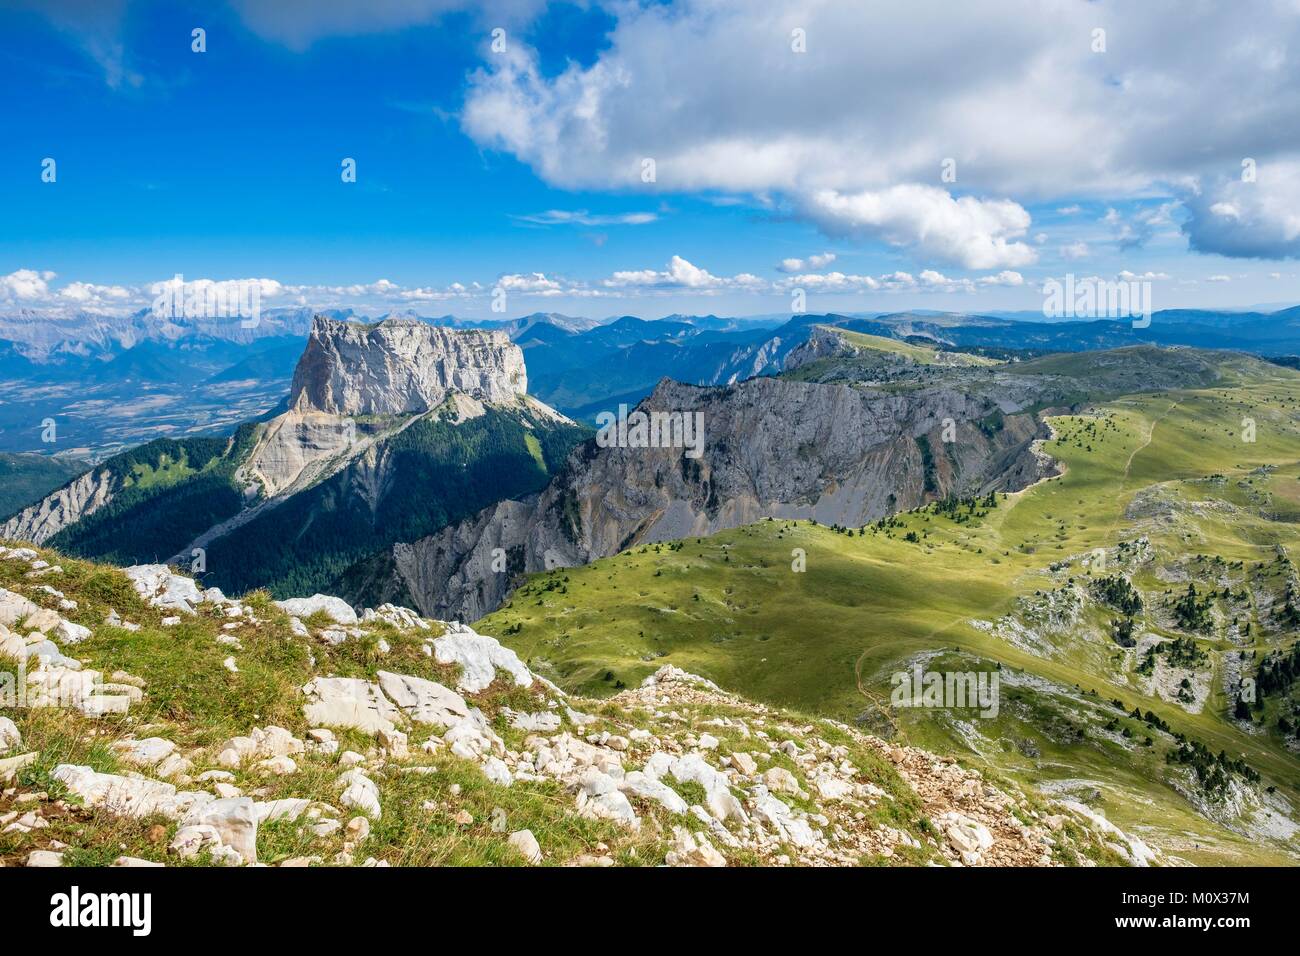 France,Isère,Parc Naturel Régional du Vercors, la réserve naturelle nationale des hauts plateaux du Vercors, Mont Aiguille (alt : 2087 m) et le massif du Dévoluy à l'arrière-plan Banque D'Images